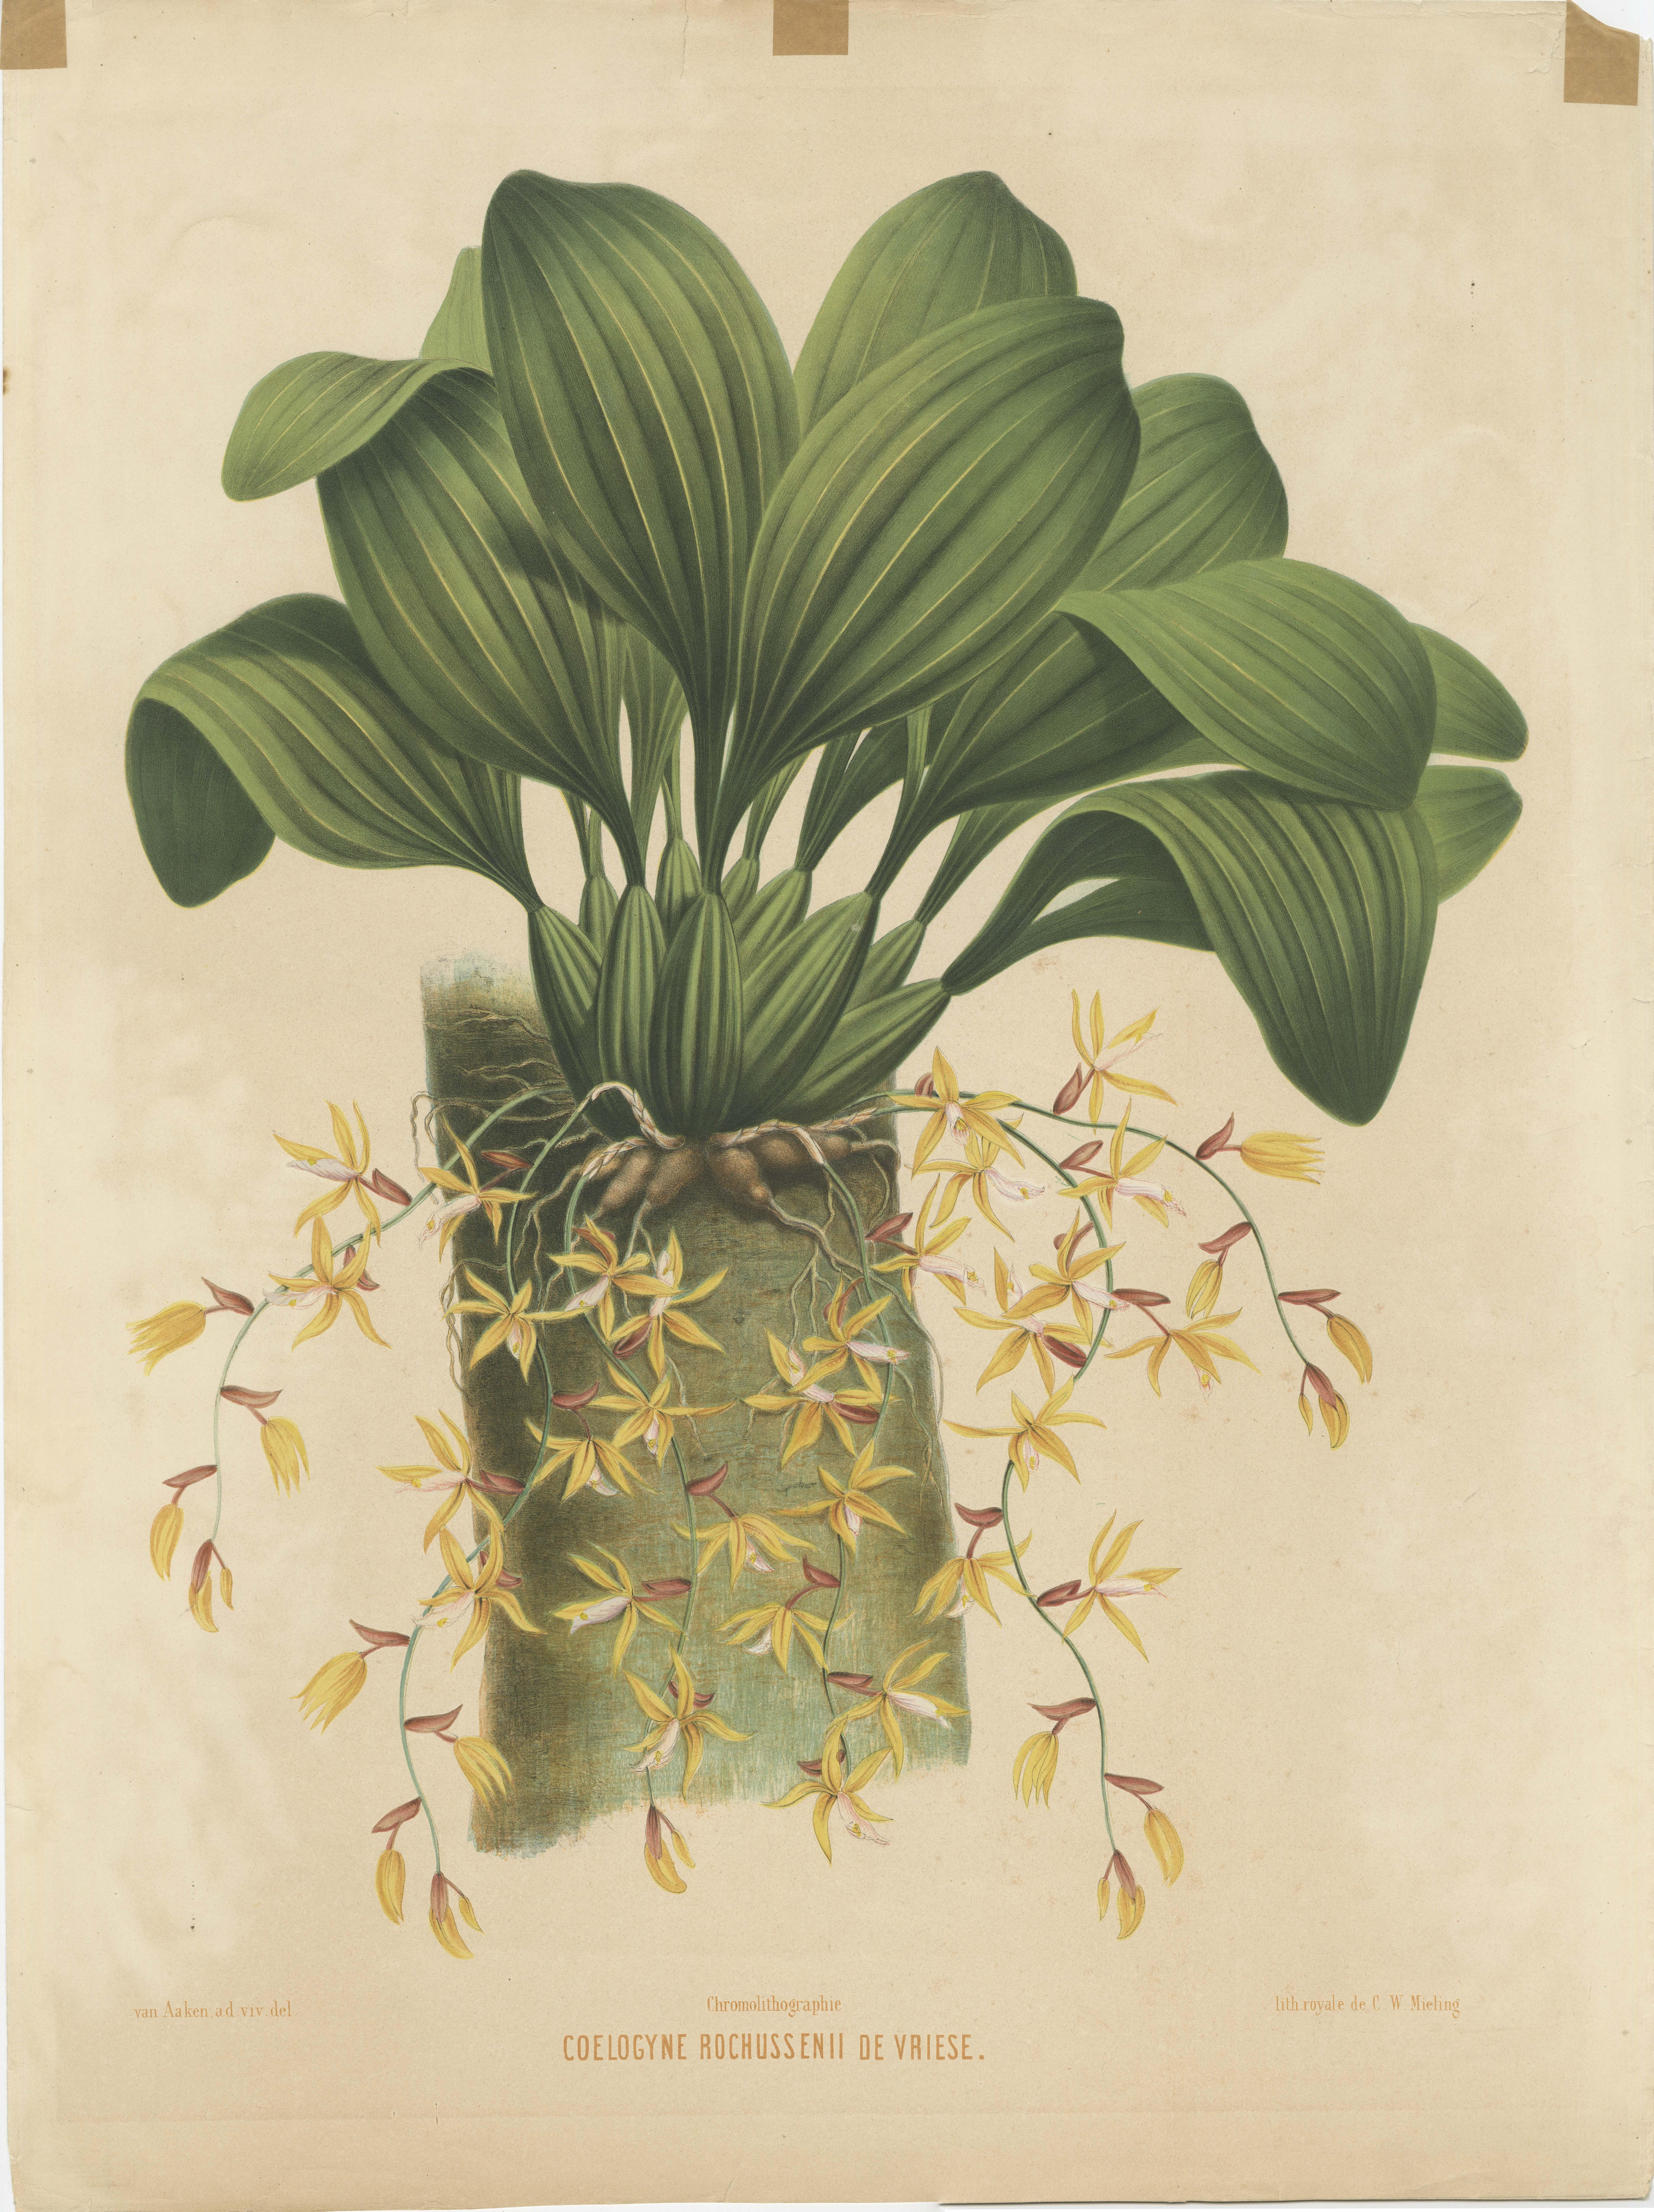 Eine große und seltene chromolithografische Originalplatte aus einem bedeutenden botanischen Werk des 19. Jahrhunderts über Orchideen aus Niederländisch-Ostindien (heute Indonesien). 

Es stammt aus dem 1854 erschienenen Buch 